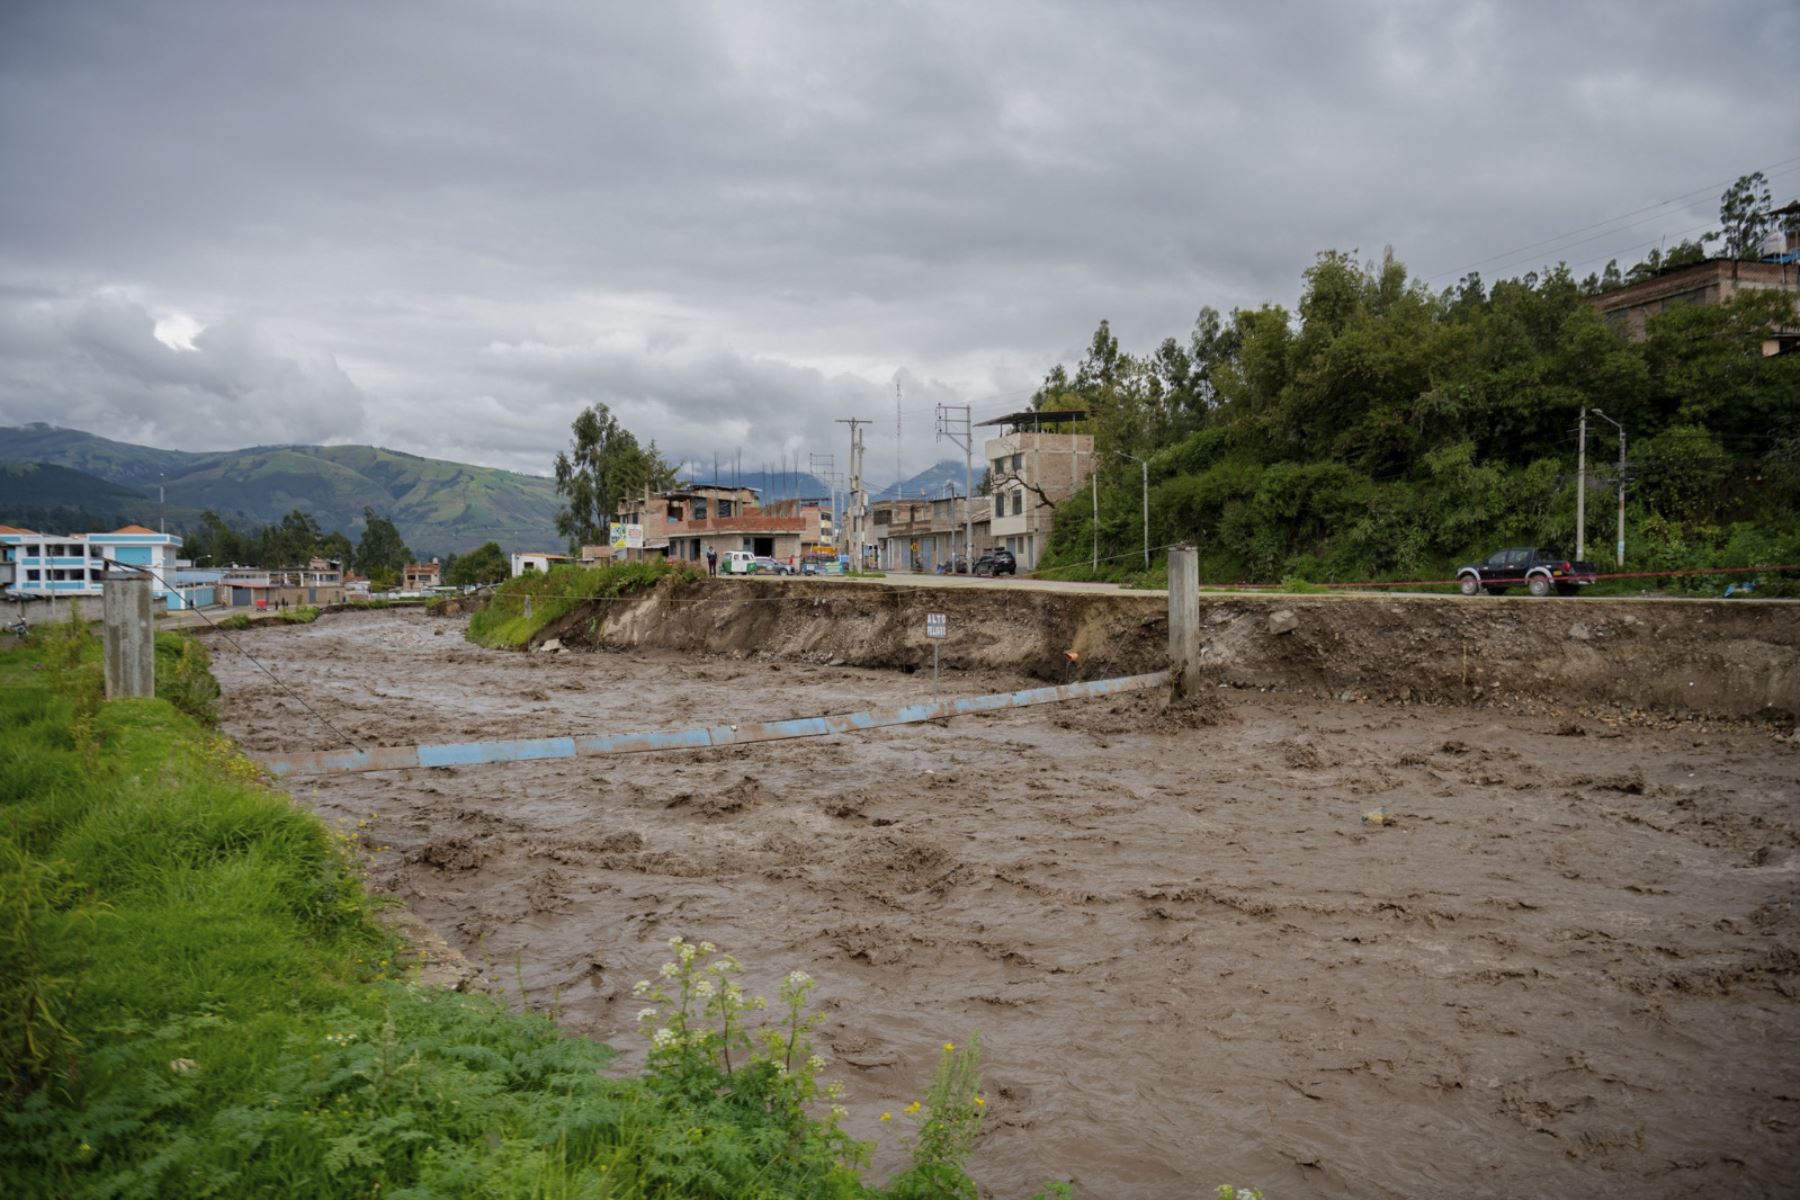 El desborbe del río Chumbao deja seis víctimas mortales  y cuantiosos daños materiales en la provincia de  Andahuaylas, en Apurímac.